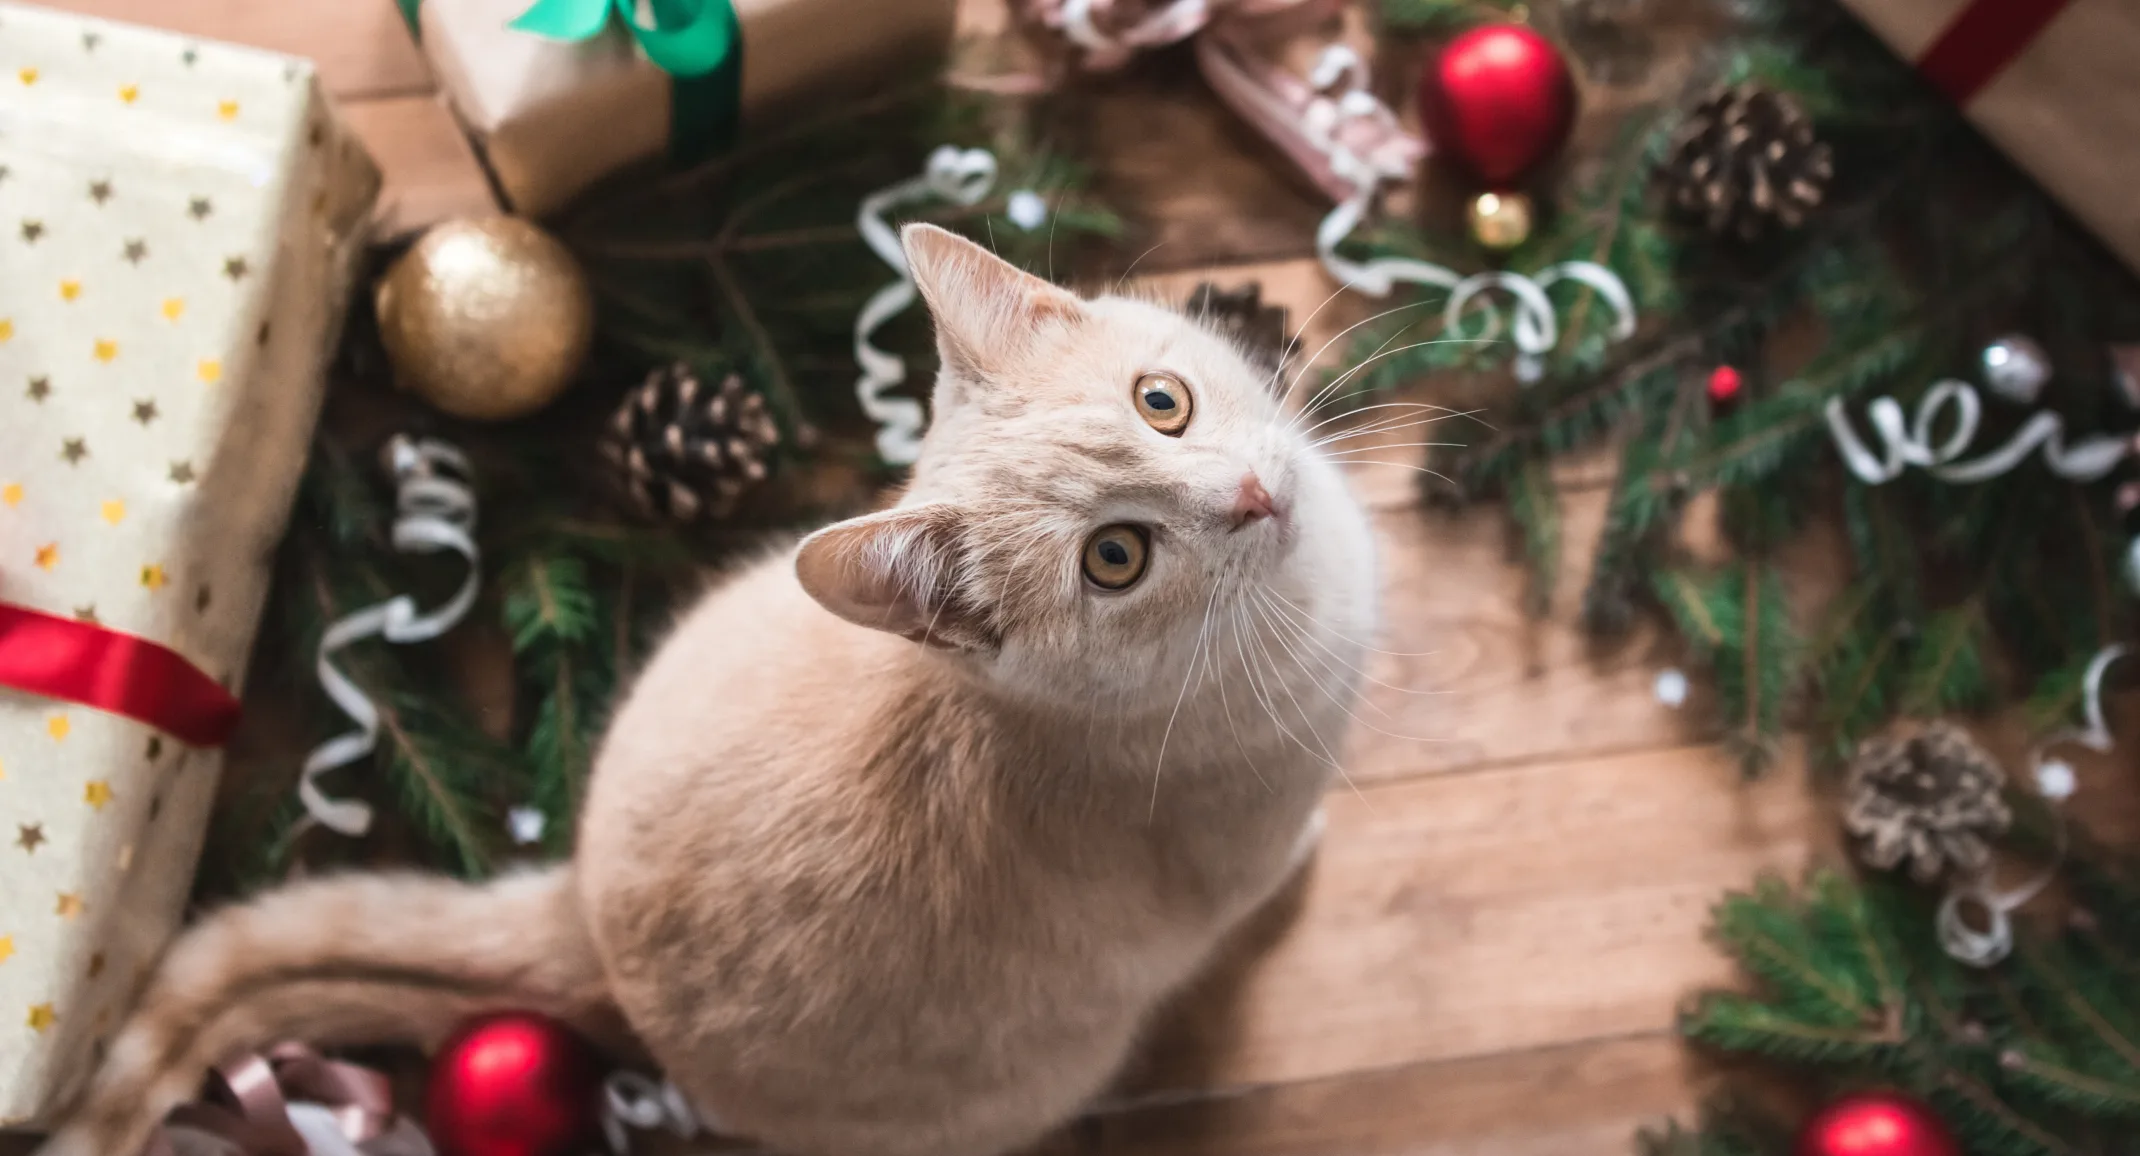 Cat sitting in wreath